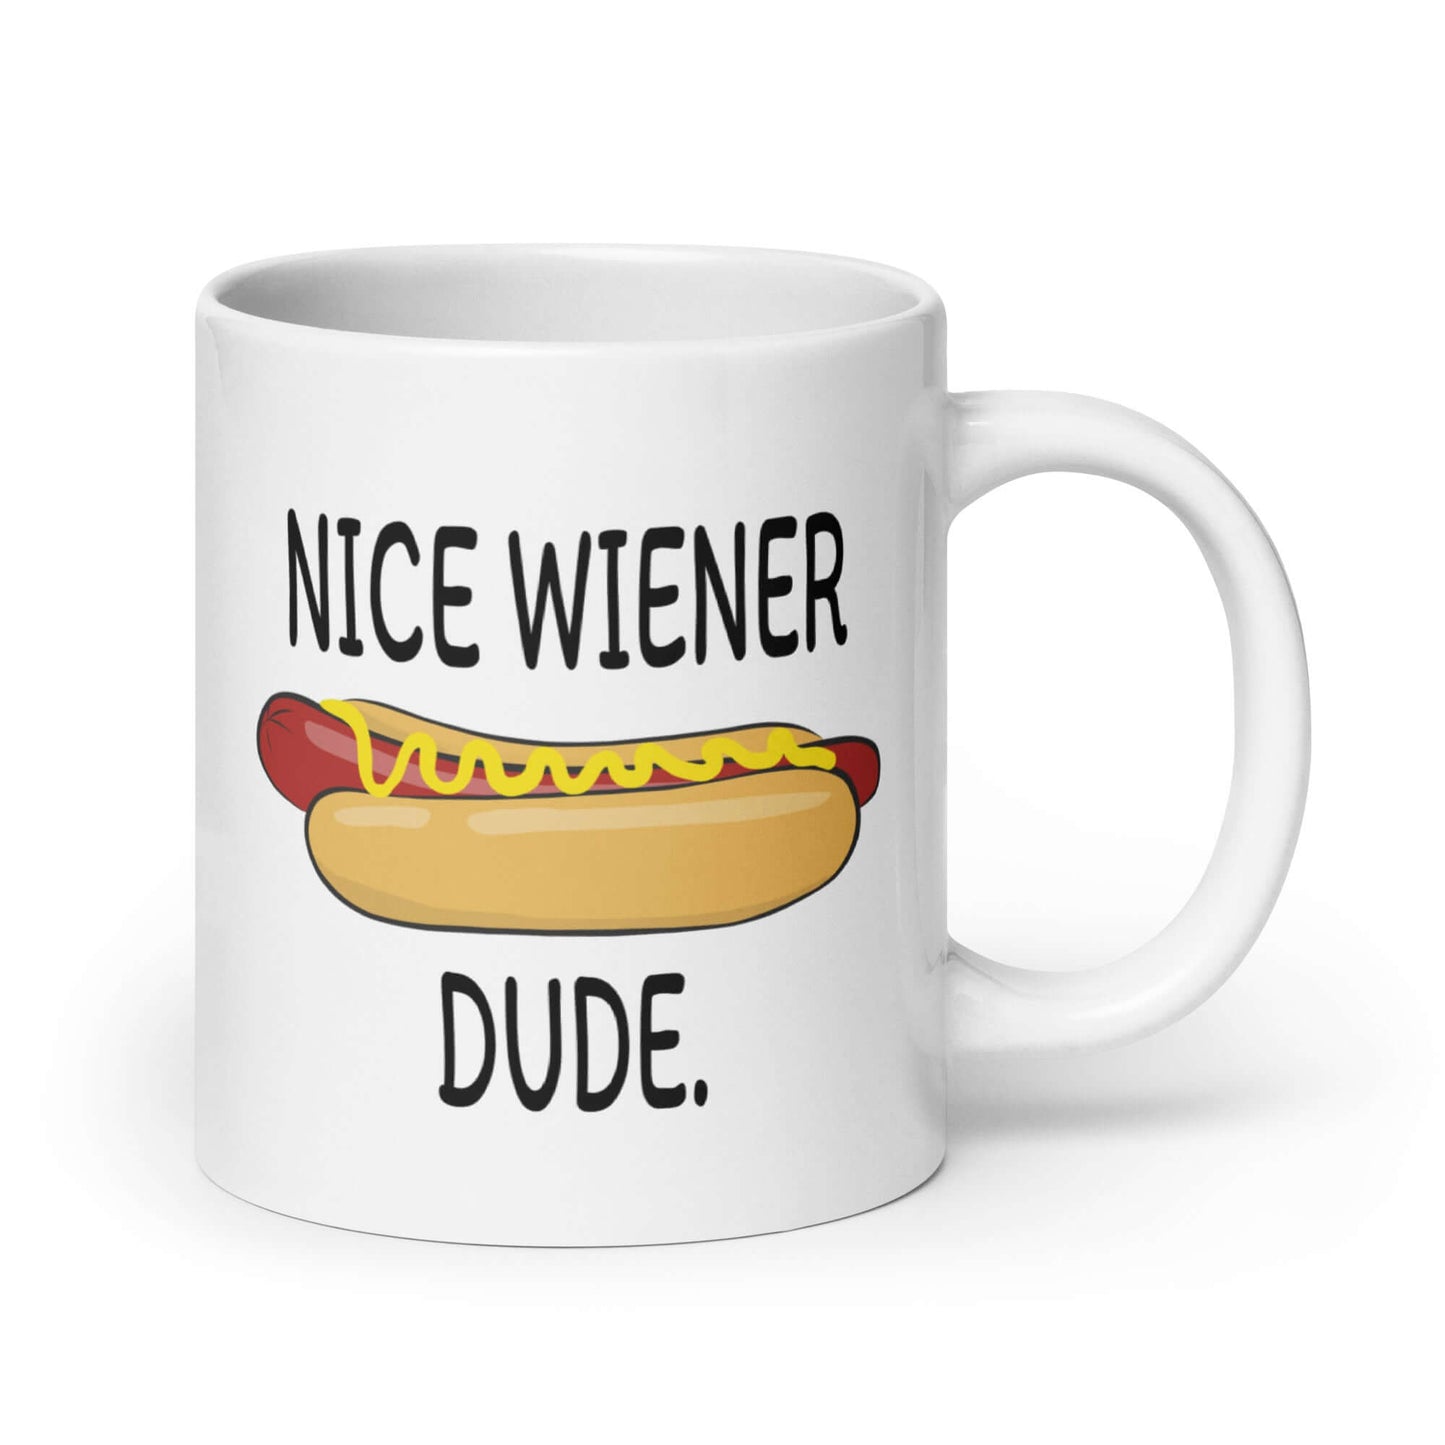 Nice wiener dude funny pun Mug